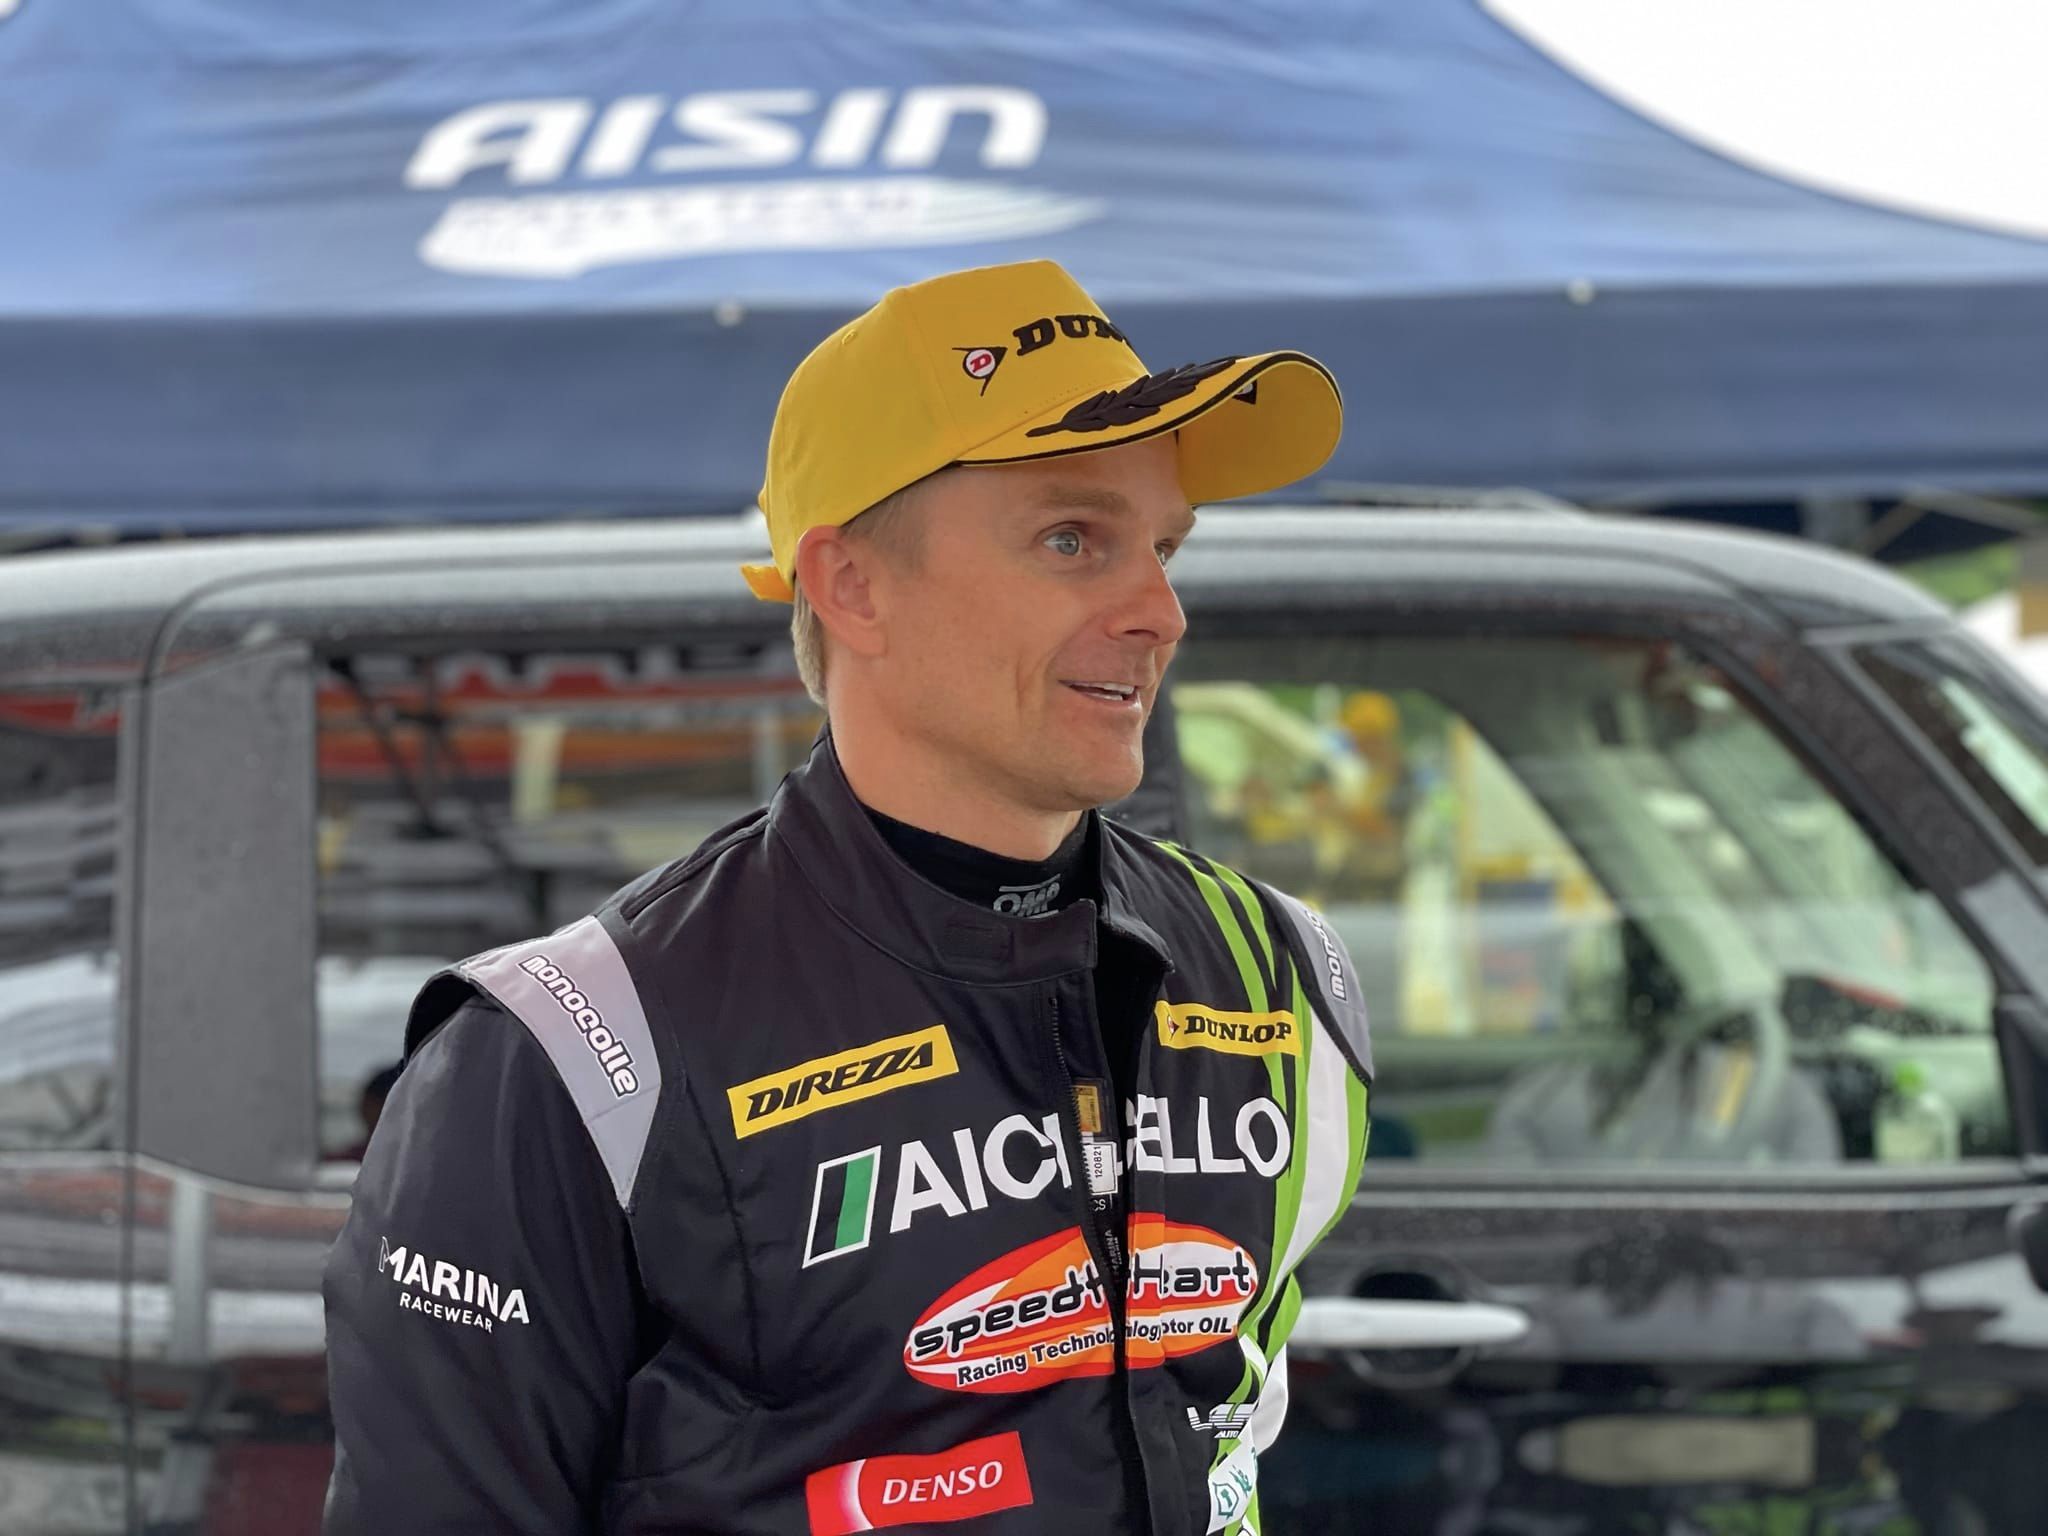 Heikki Kovalainen, F1, Rally